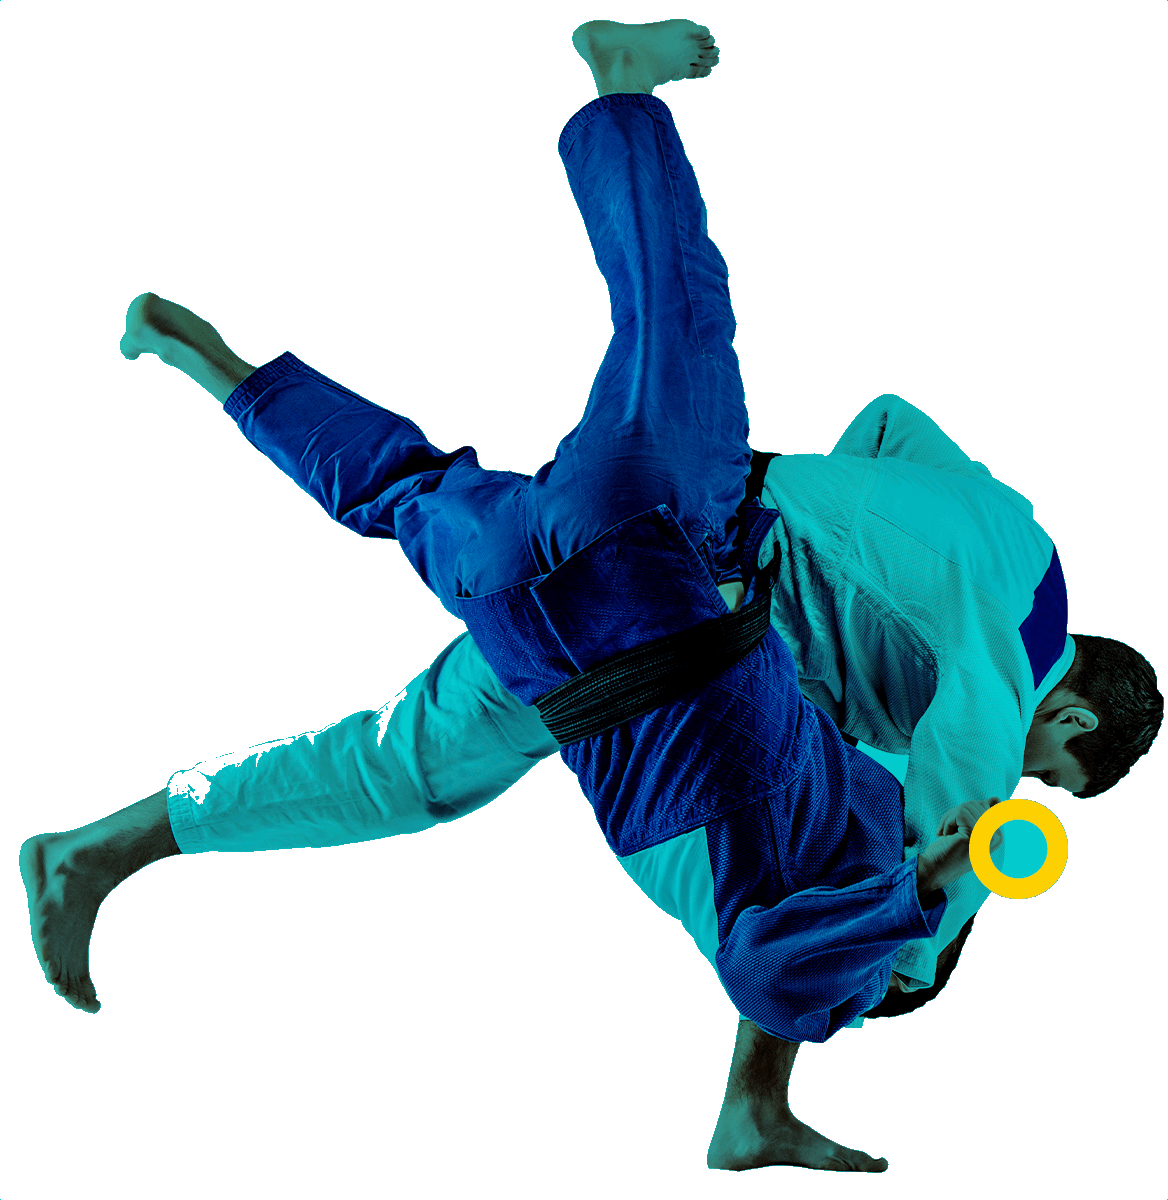 En la foto, se ve a un judoka realizando una manionbra de esta disciplina a un contrincante que lo hace caer al piso. 